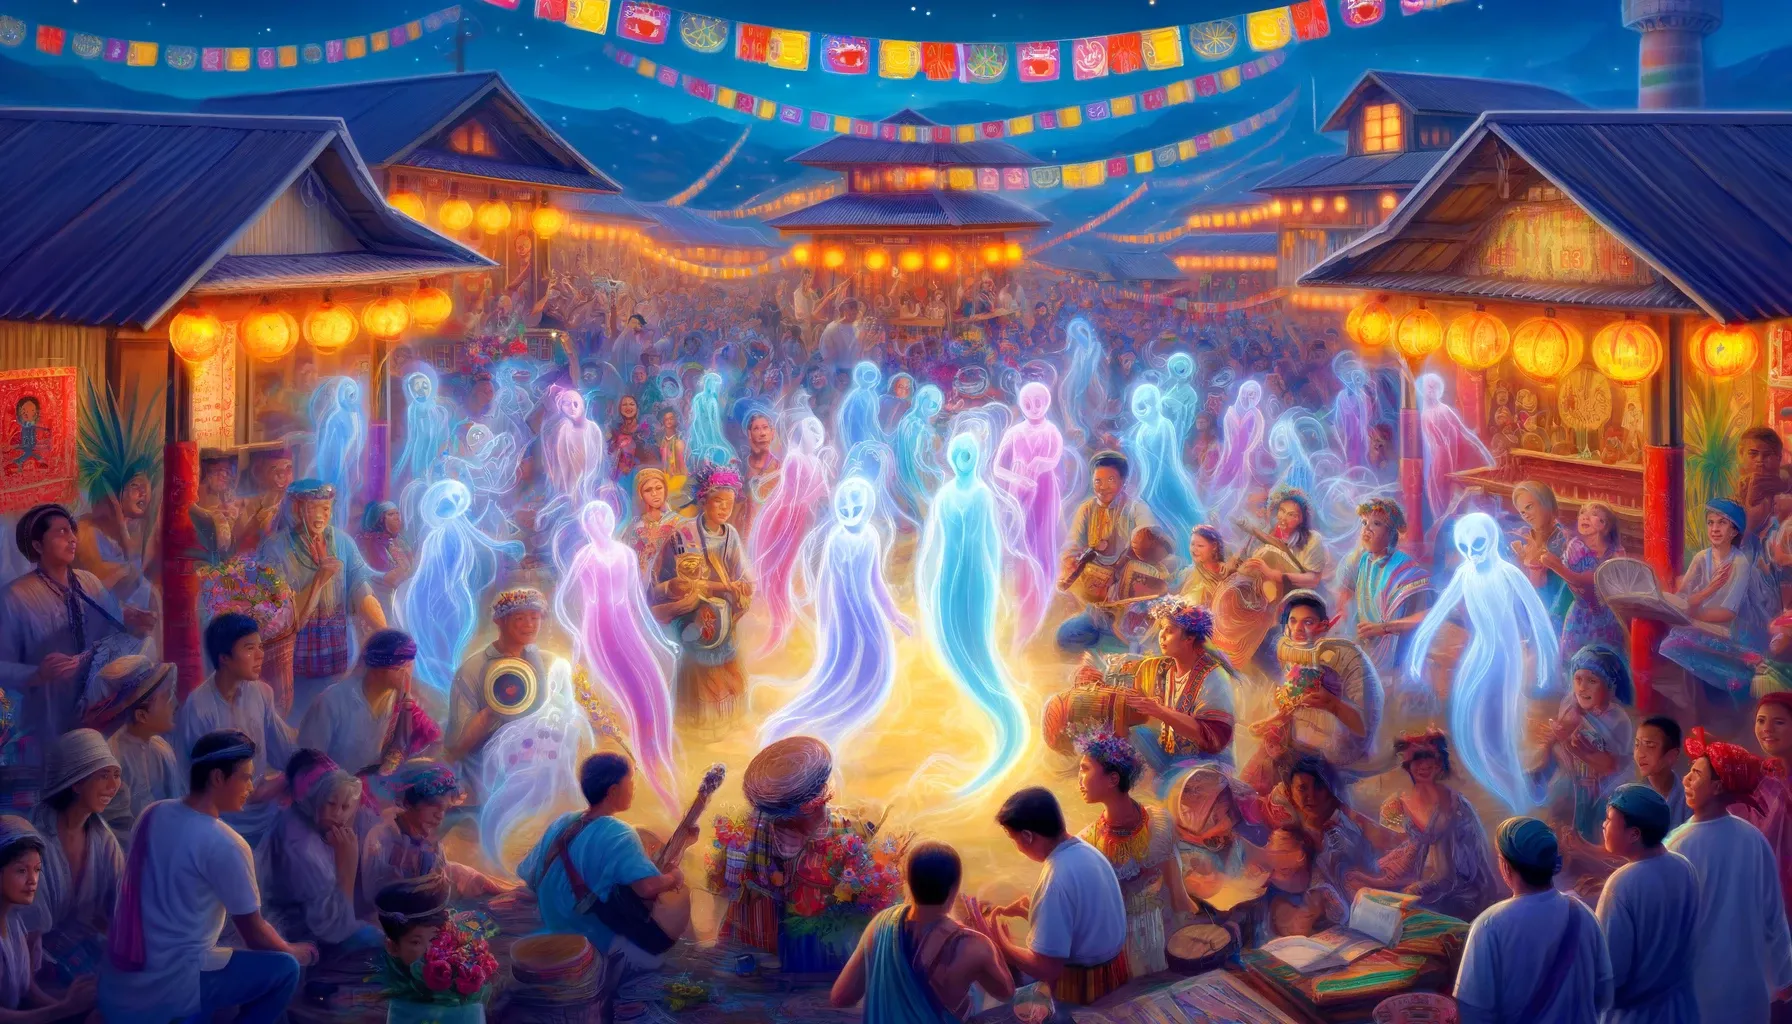 Una escena festiva en un pueblo filipino, con personas en trajes coloridos bailando y cantando, y espíritus anito luminosos mezclados con la multitud.